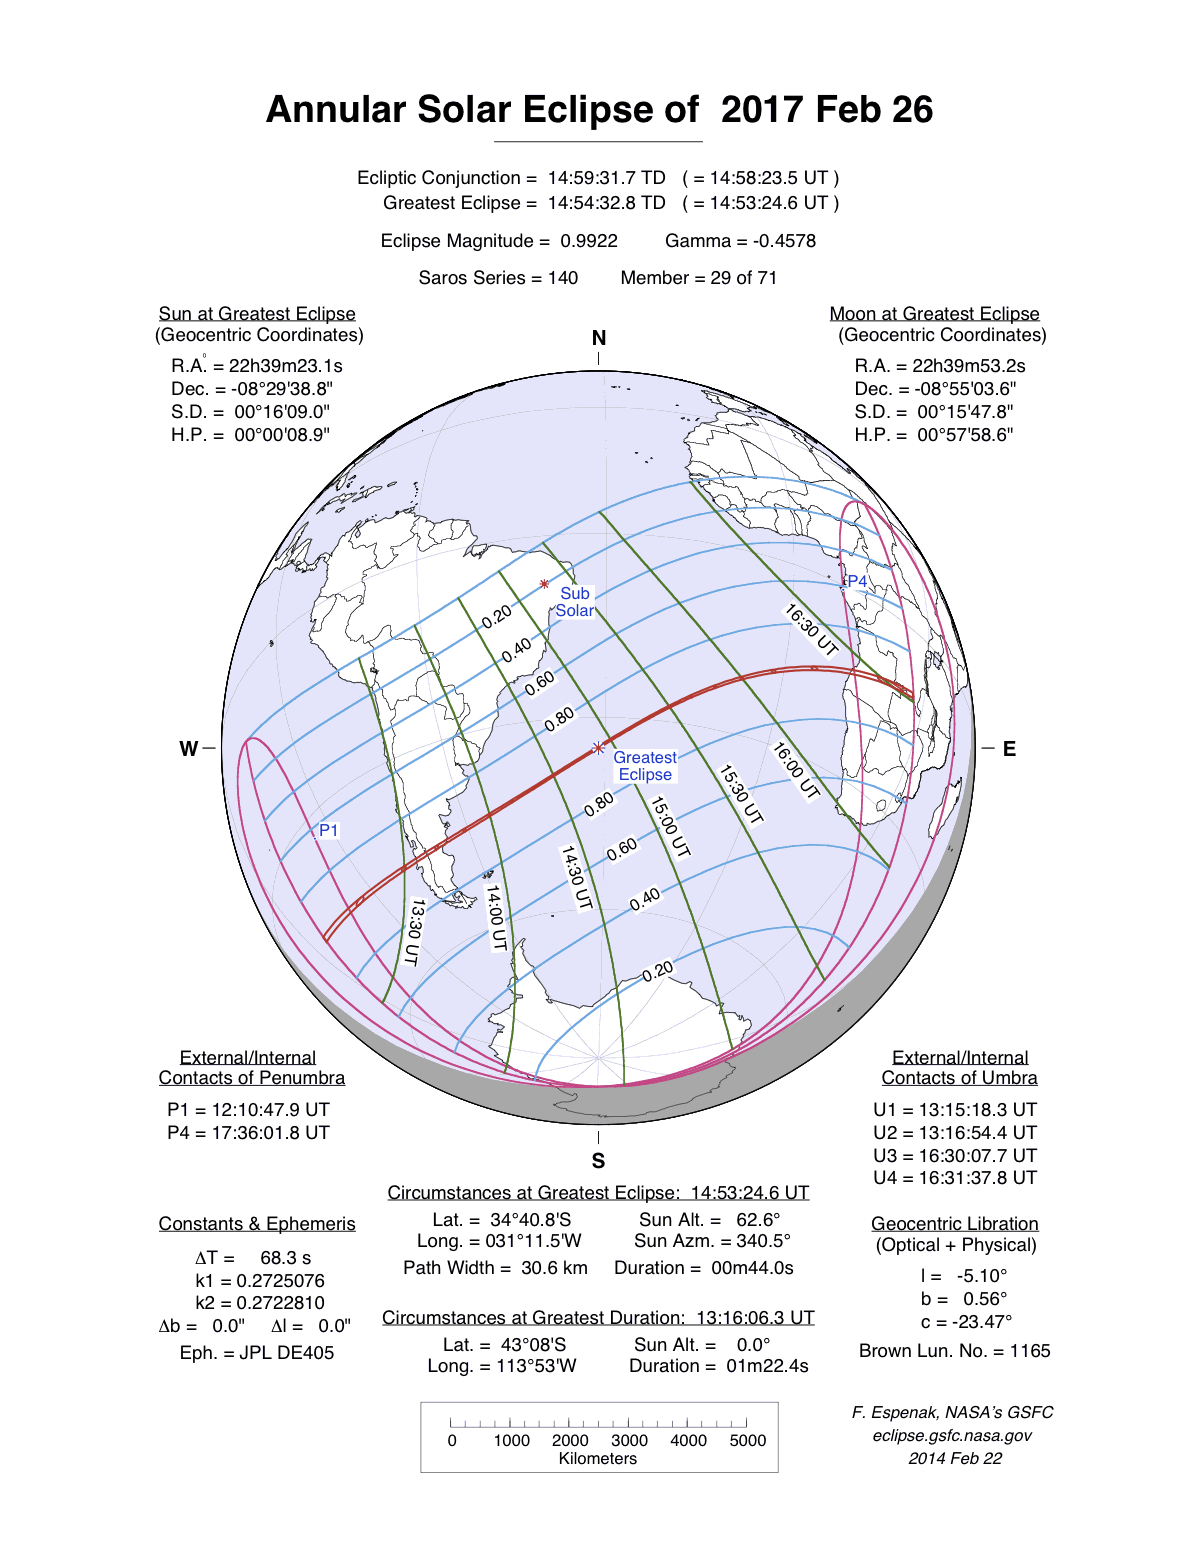 Verlauf der Ringfrmigen Sonnenfinsternis am 26.02.2017